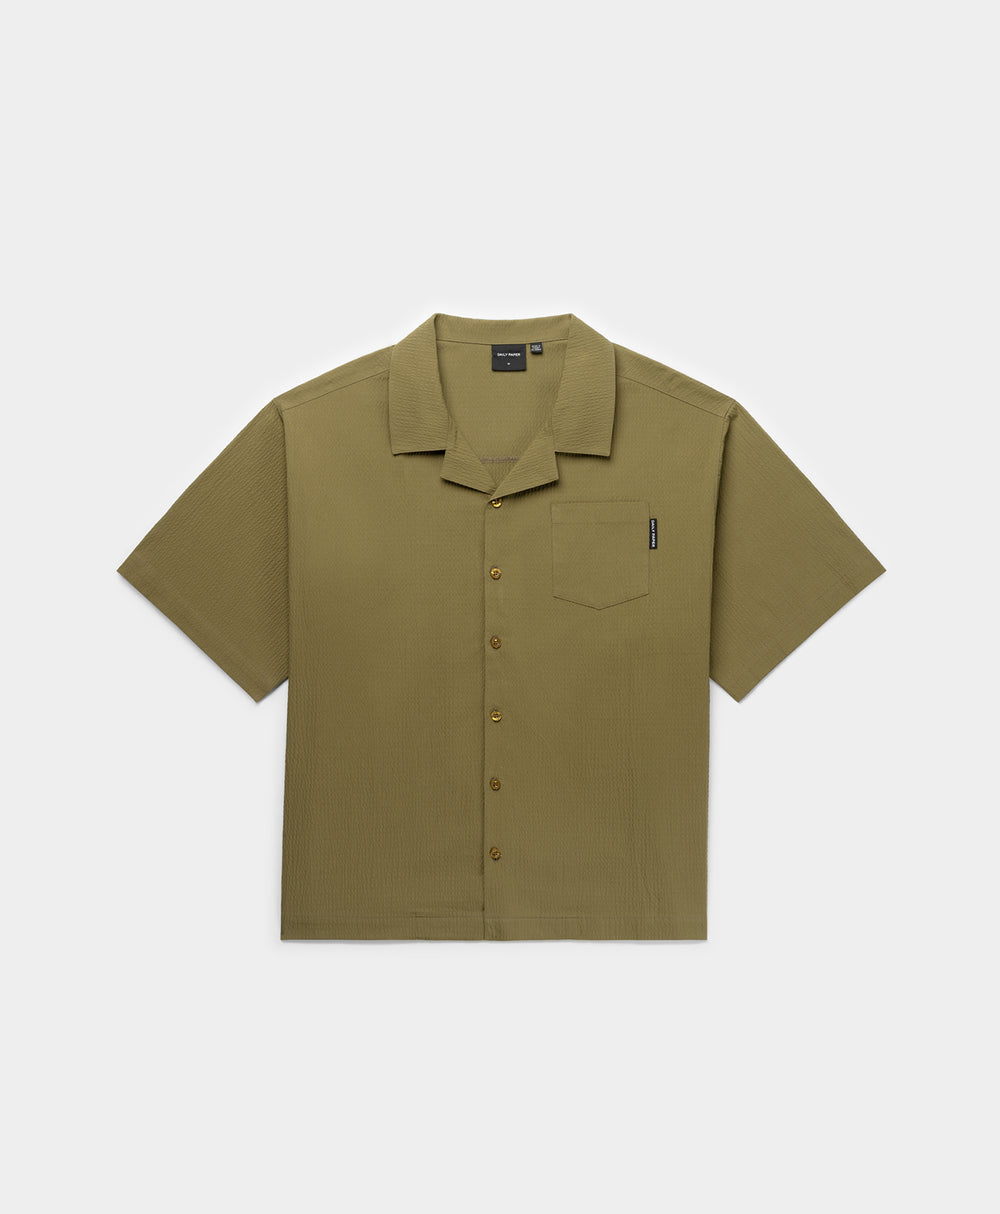 DP - Clover Green Pinira Shirt - Packshot - Front